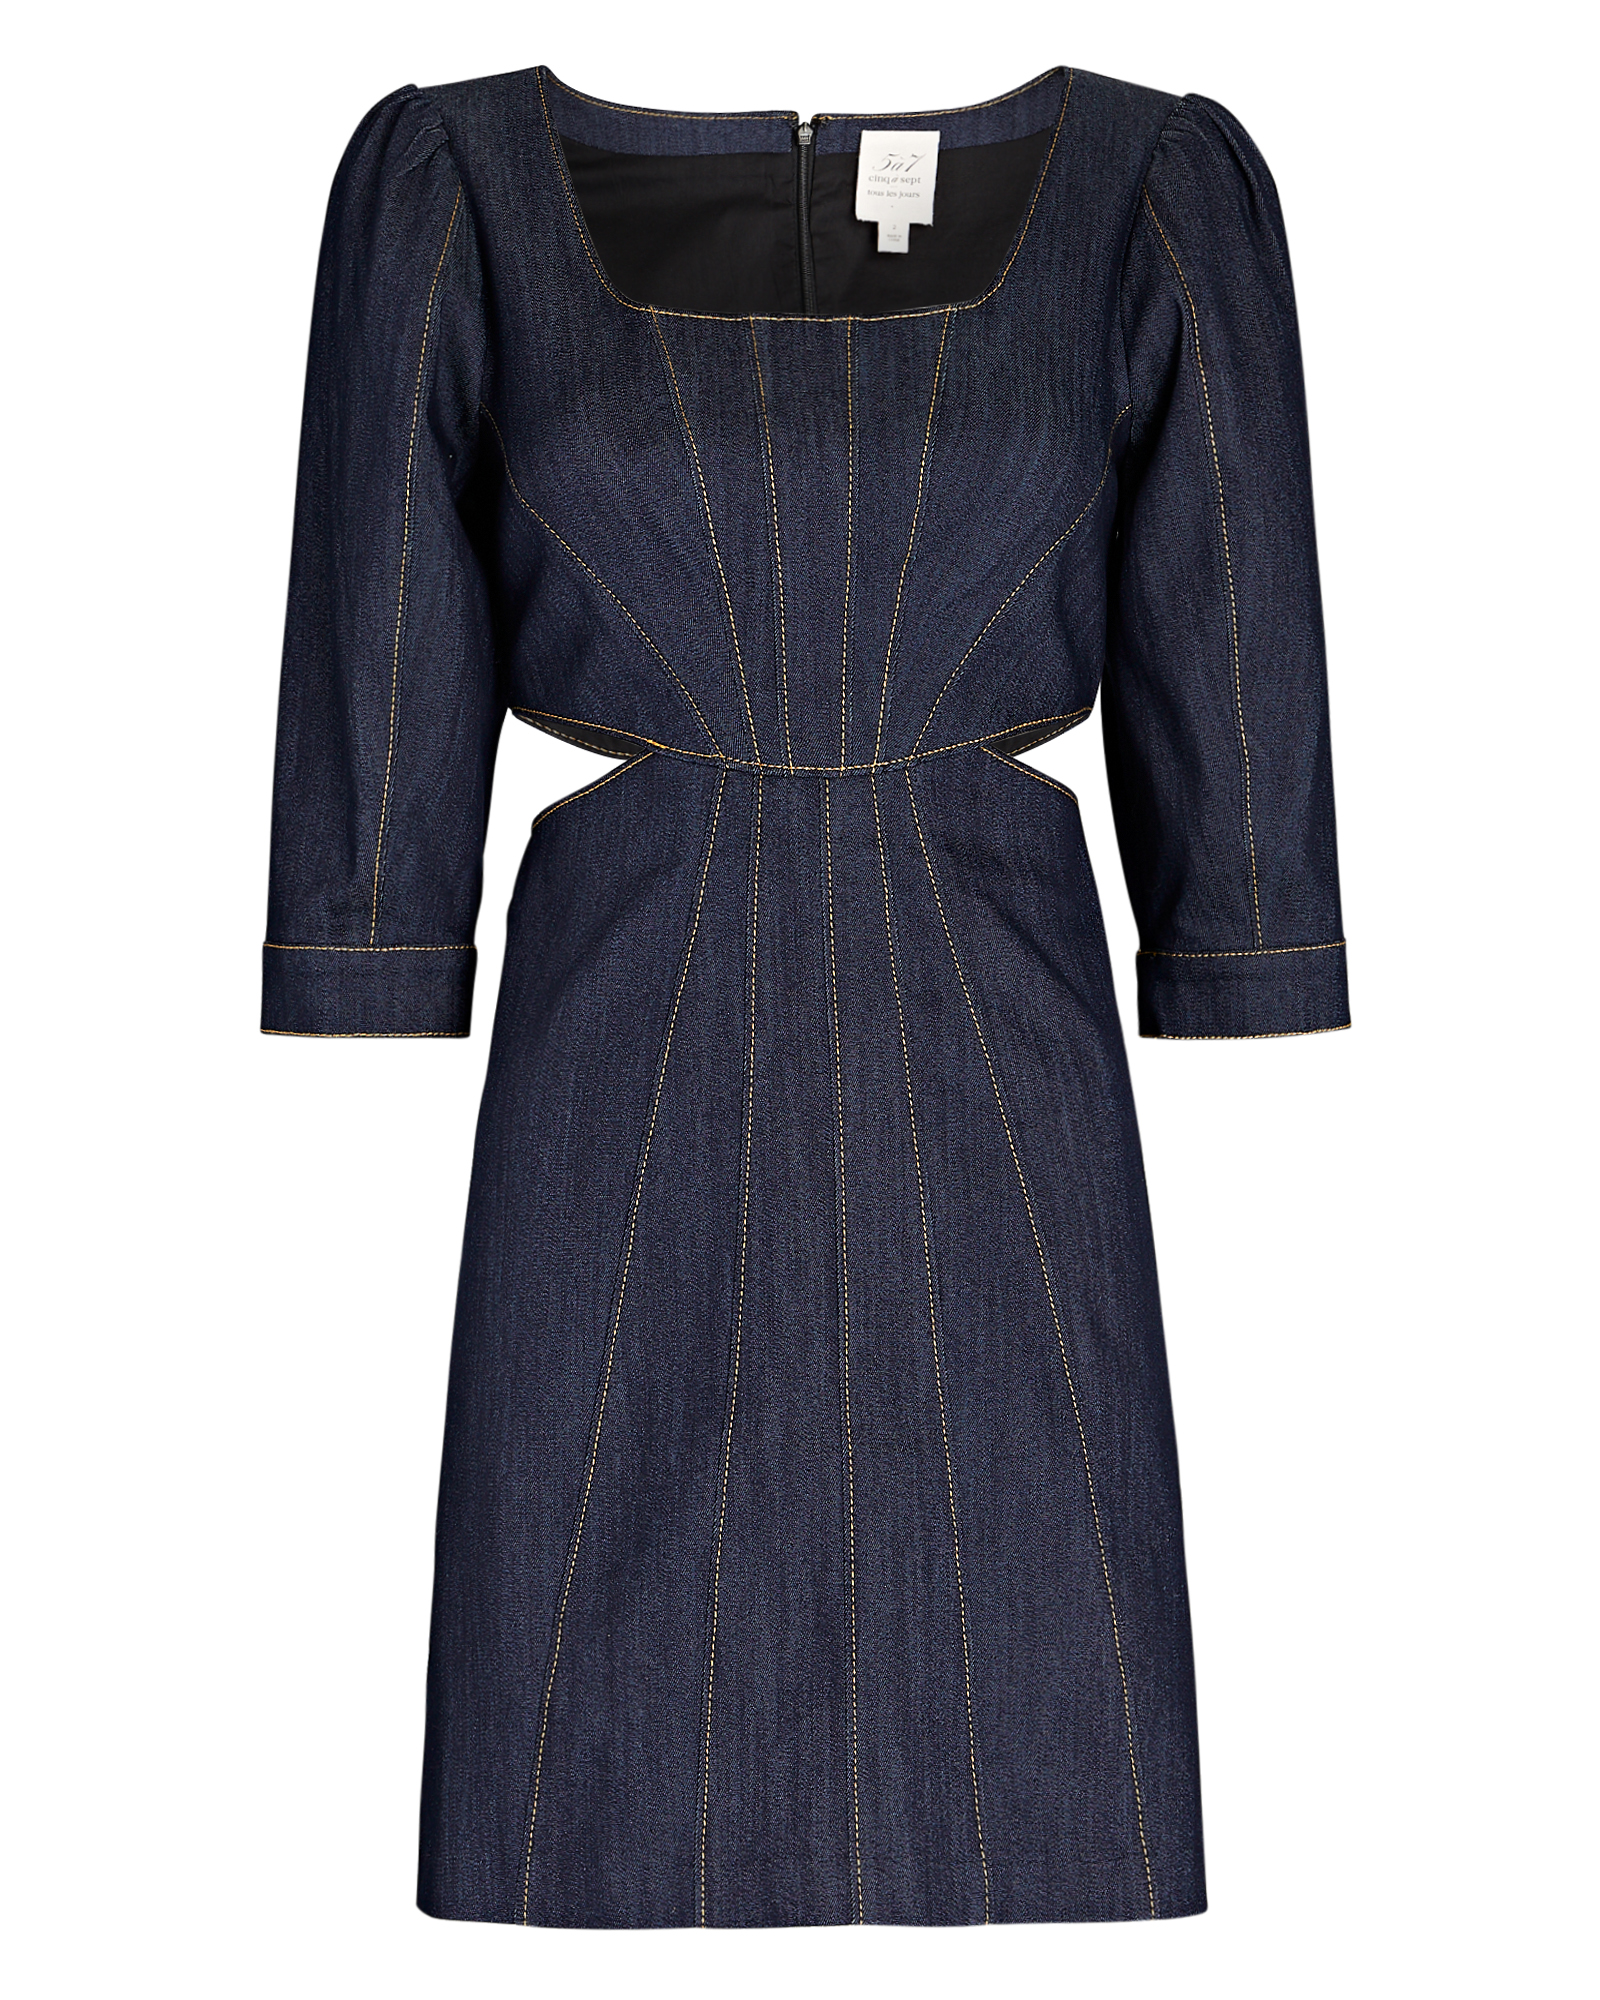 Cinq à Sept Lani Cut-Out Denim Mini Dress In Blue | INTERMIX®